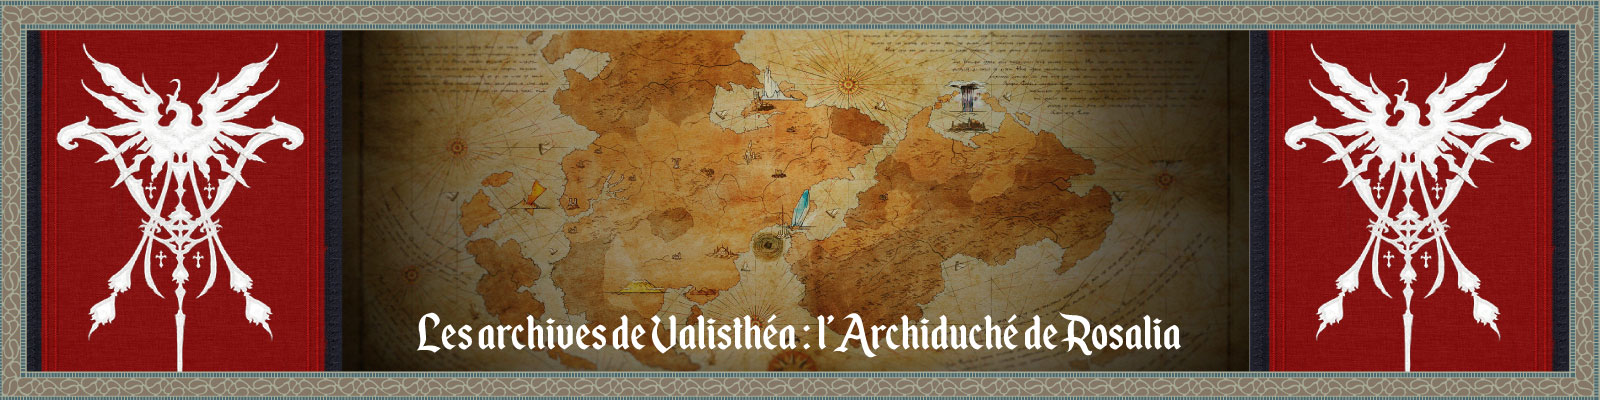 Les-archives-de-Valisthéa---l’Archiduché-de-Rosalia-2